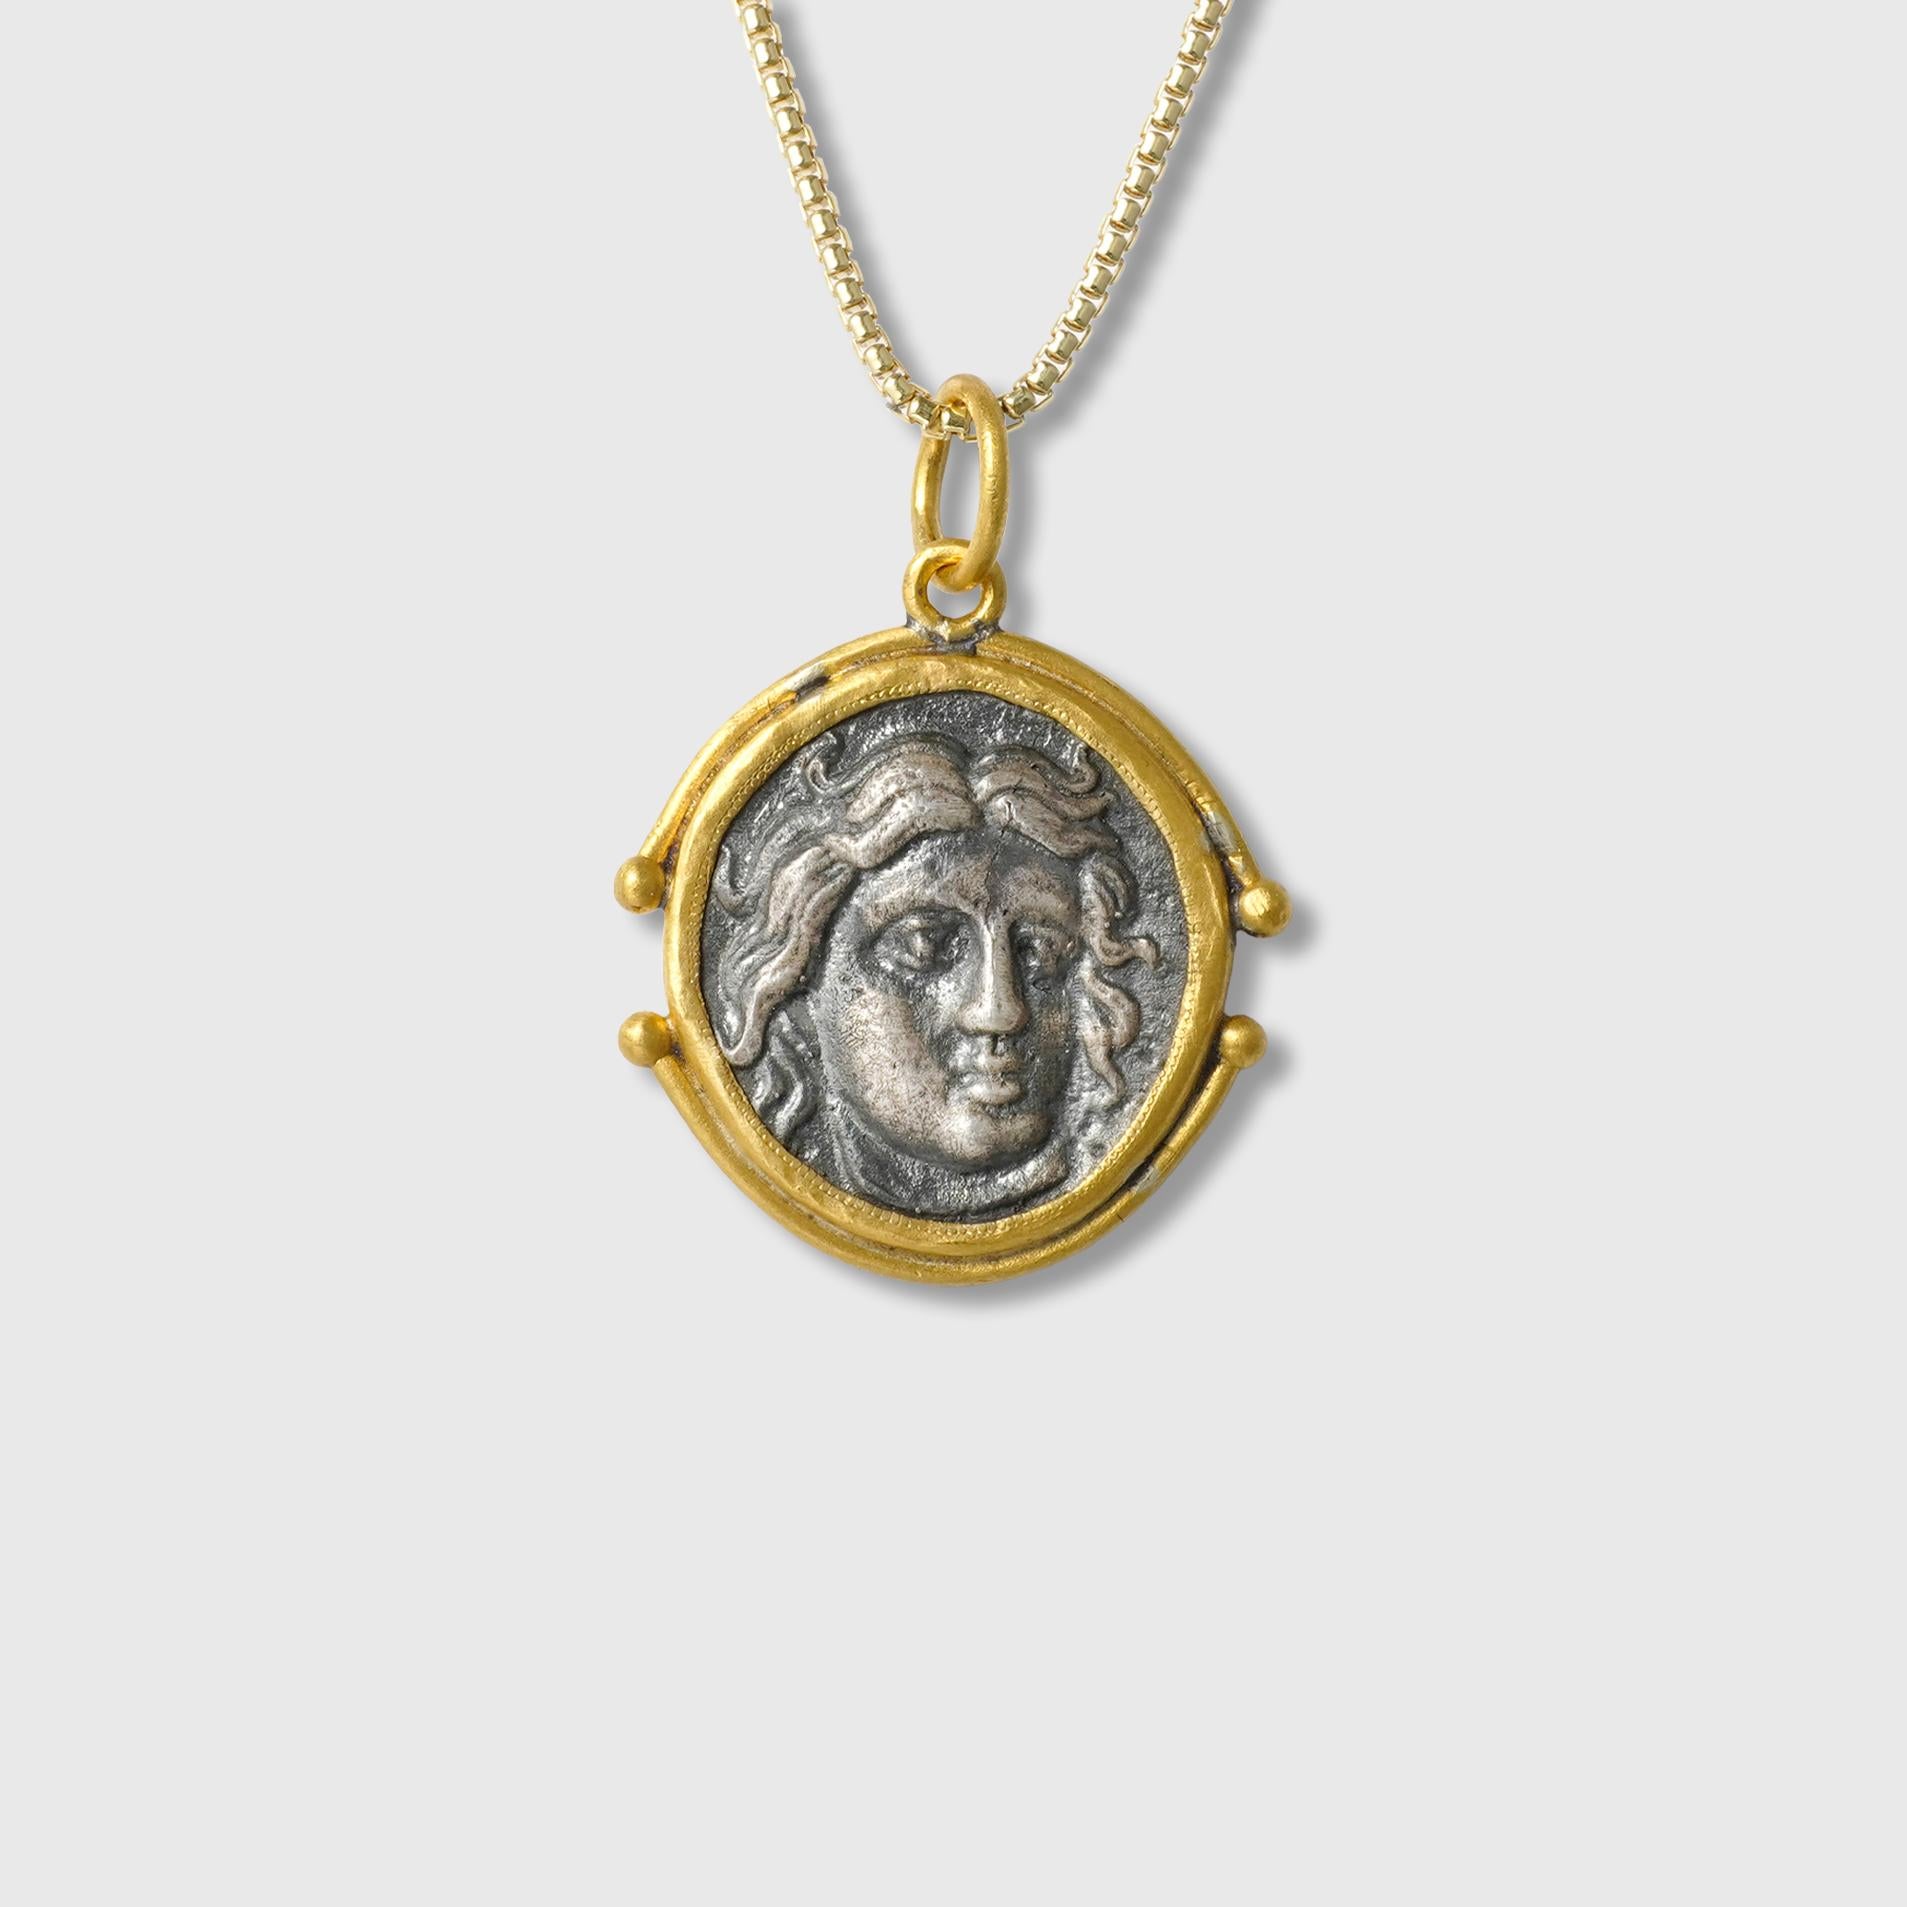 Pendentif en or et argent 24kt représentant Apollo, dieu des beaux-arts et de la musique - La face arrière montre la rose d'Apollo.

Apollo a été reconnu comme un dieu du tir à l'arc, de la musique et de la danse, de la vérité et de la prophétie, de